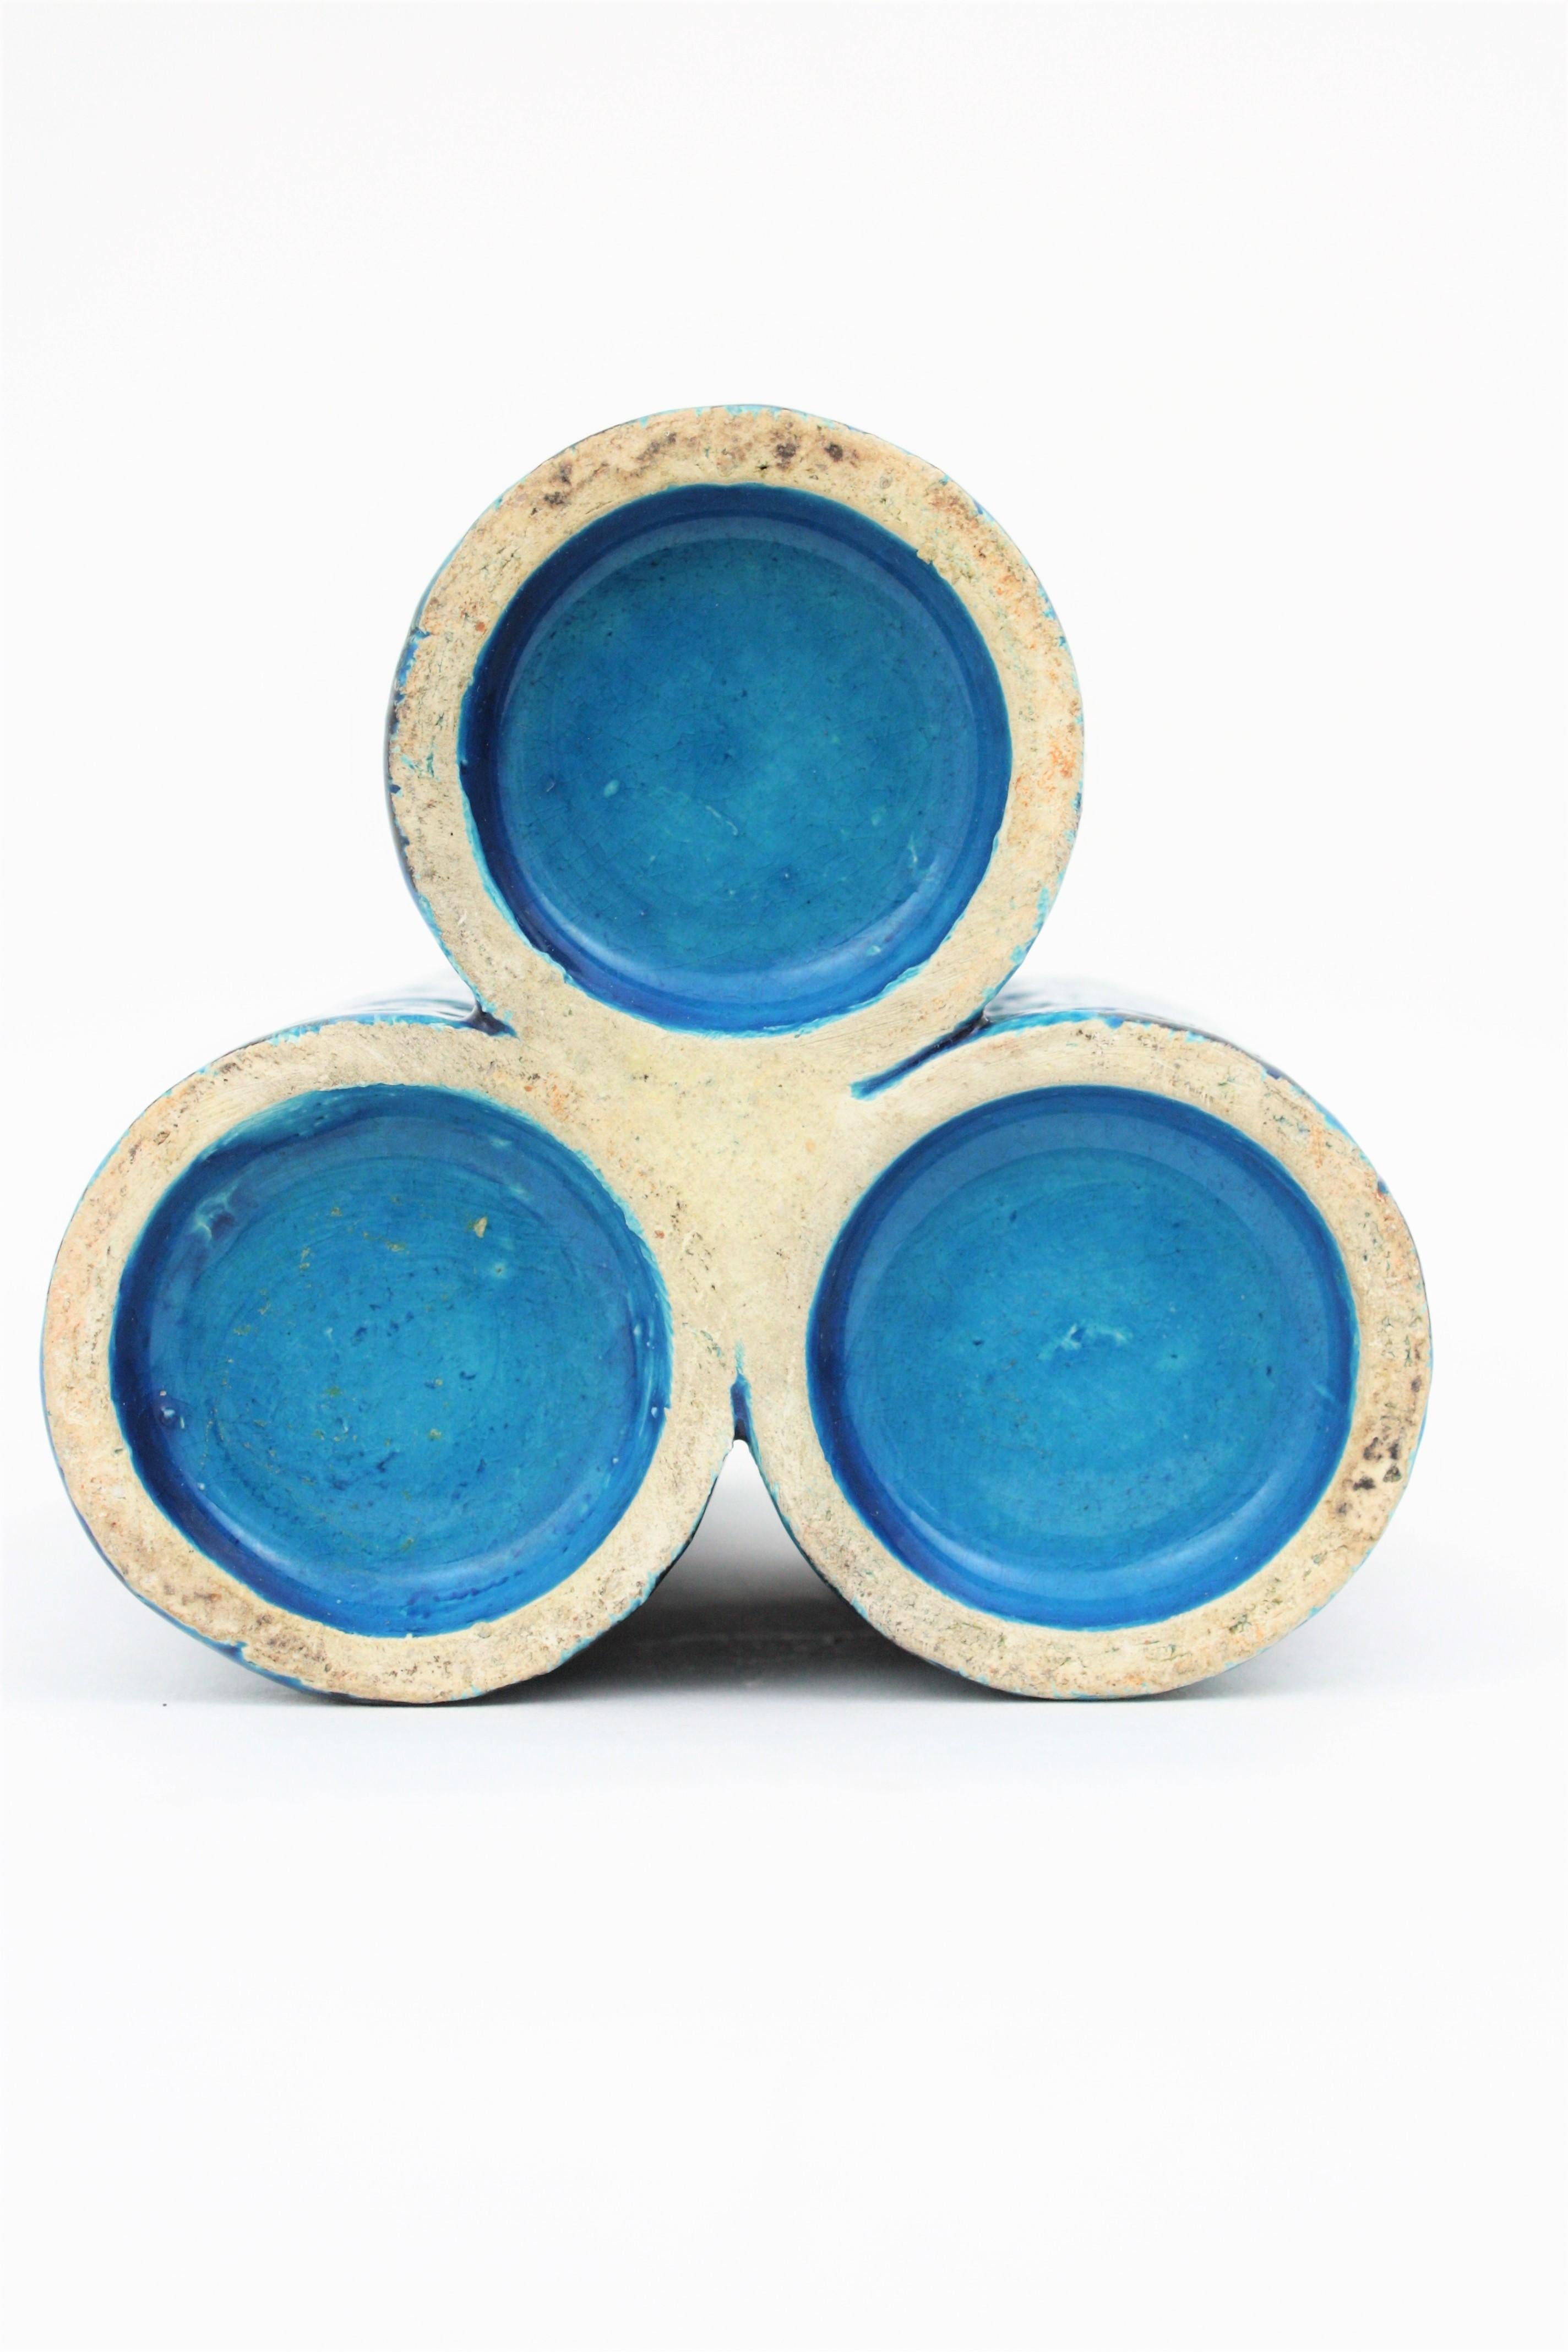 Aldo Londi Bitossi Rimini Blue Glazed Ceramic Triple Vase, Italy, 1960s 4